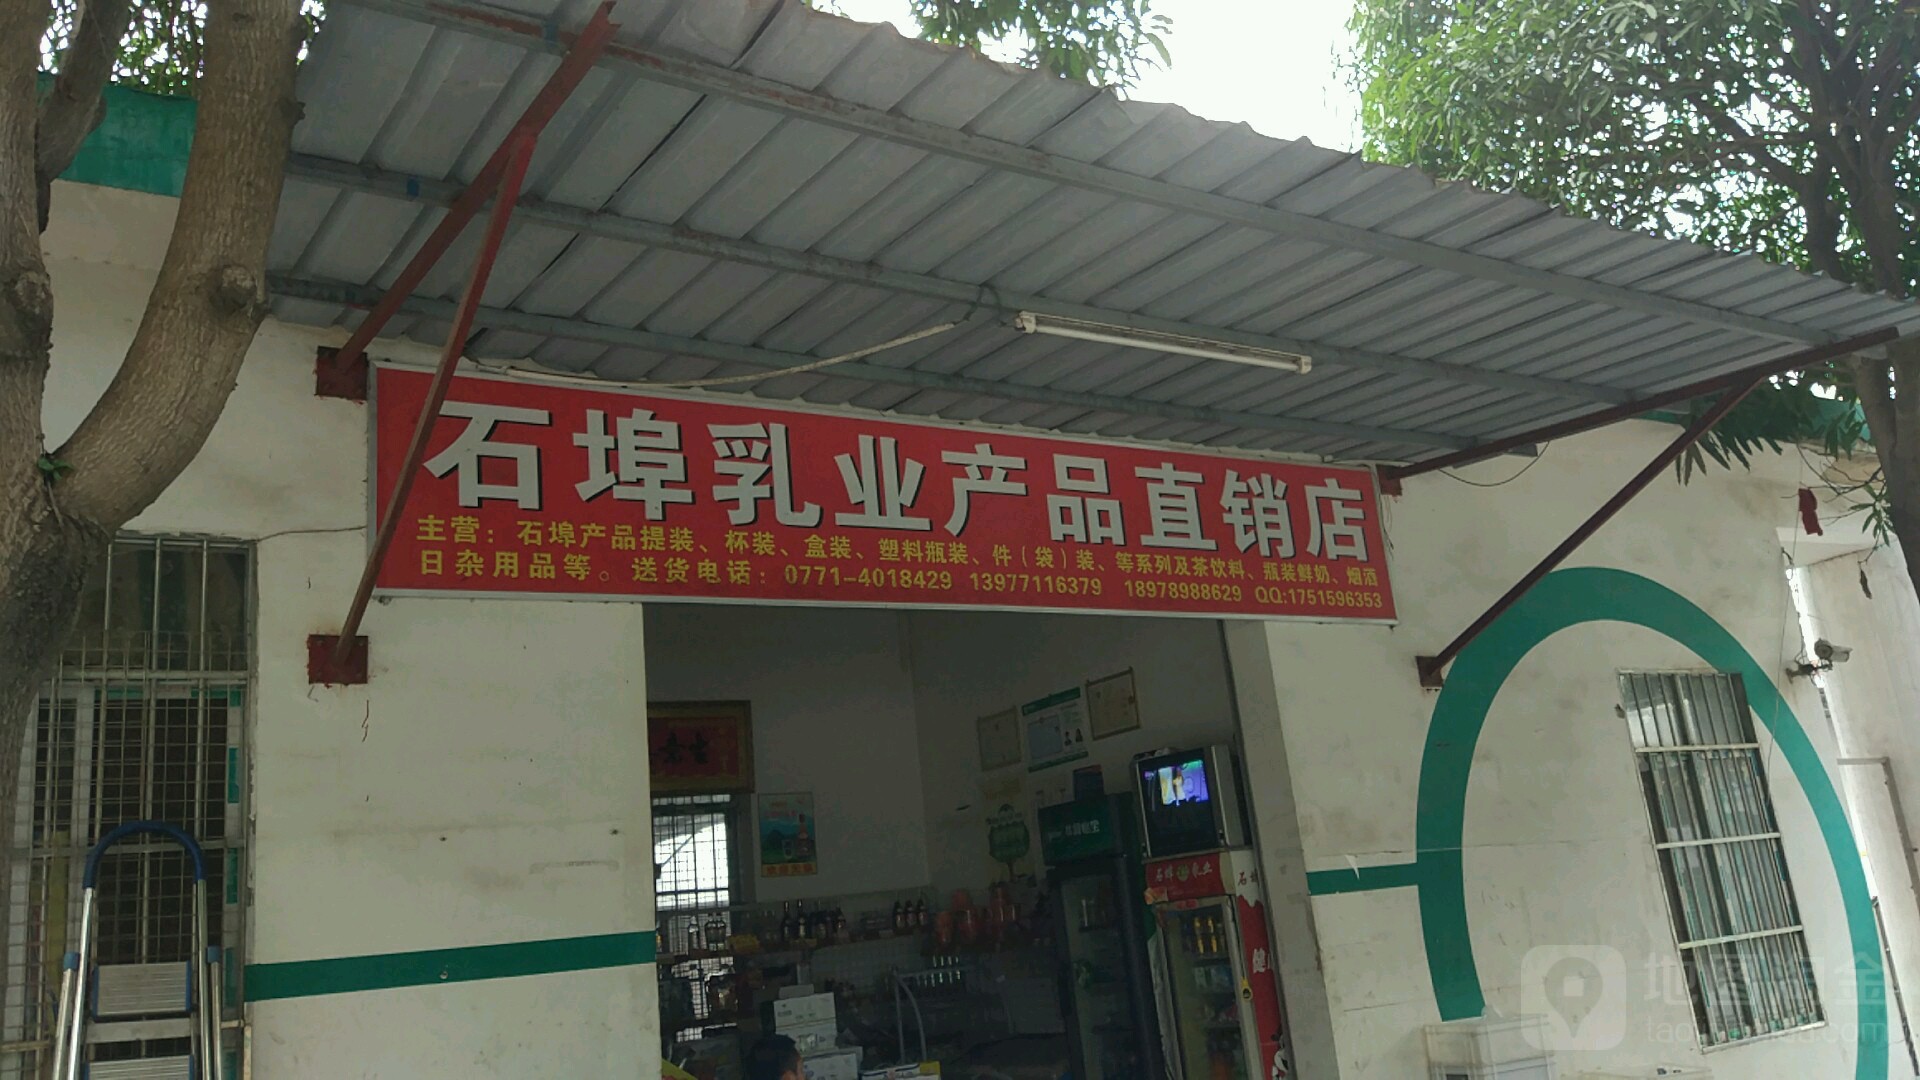 石埠乳業產品直銷店